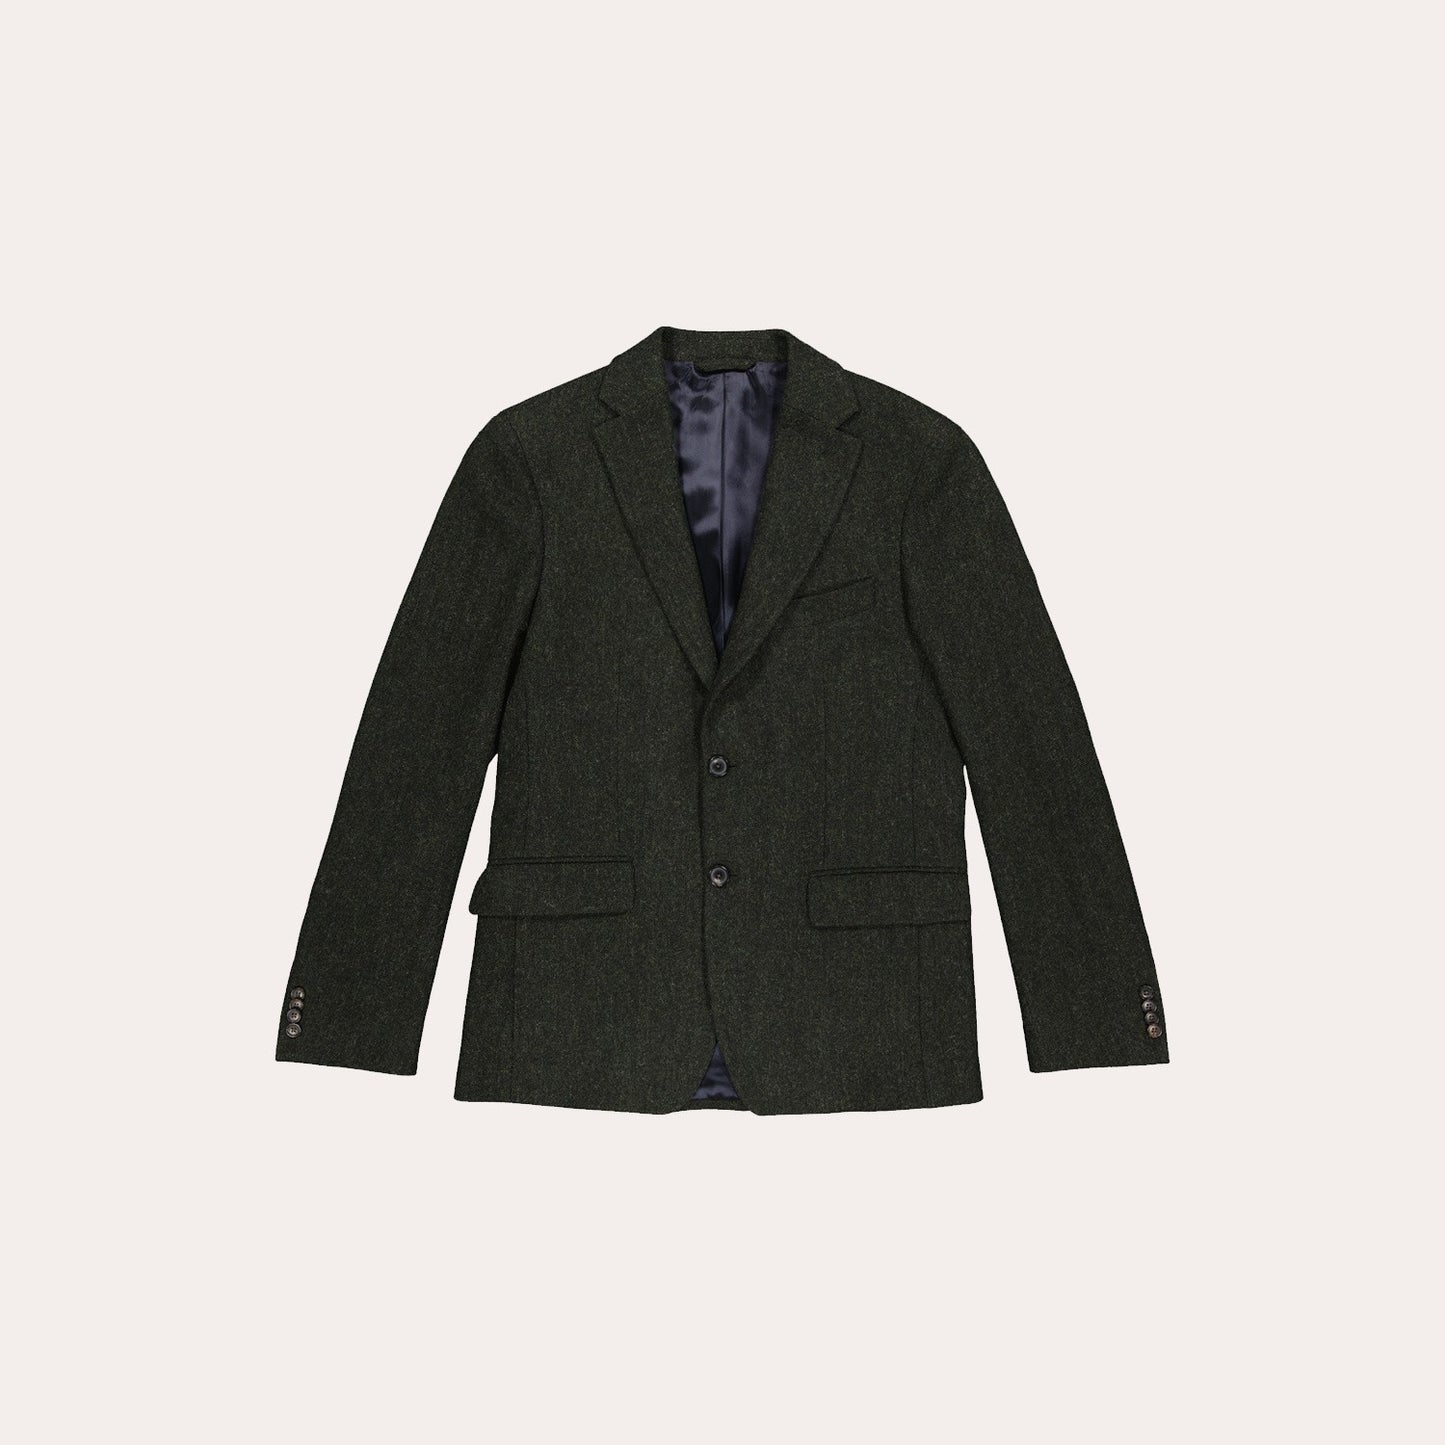 Dark green mottled wool jacket